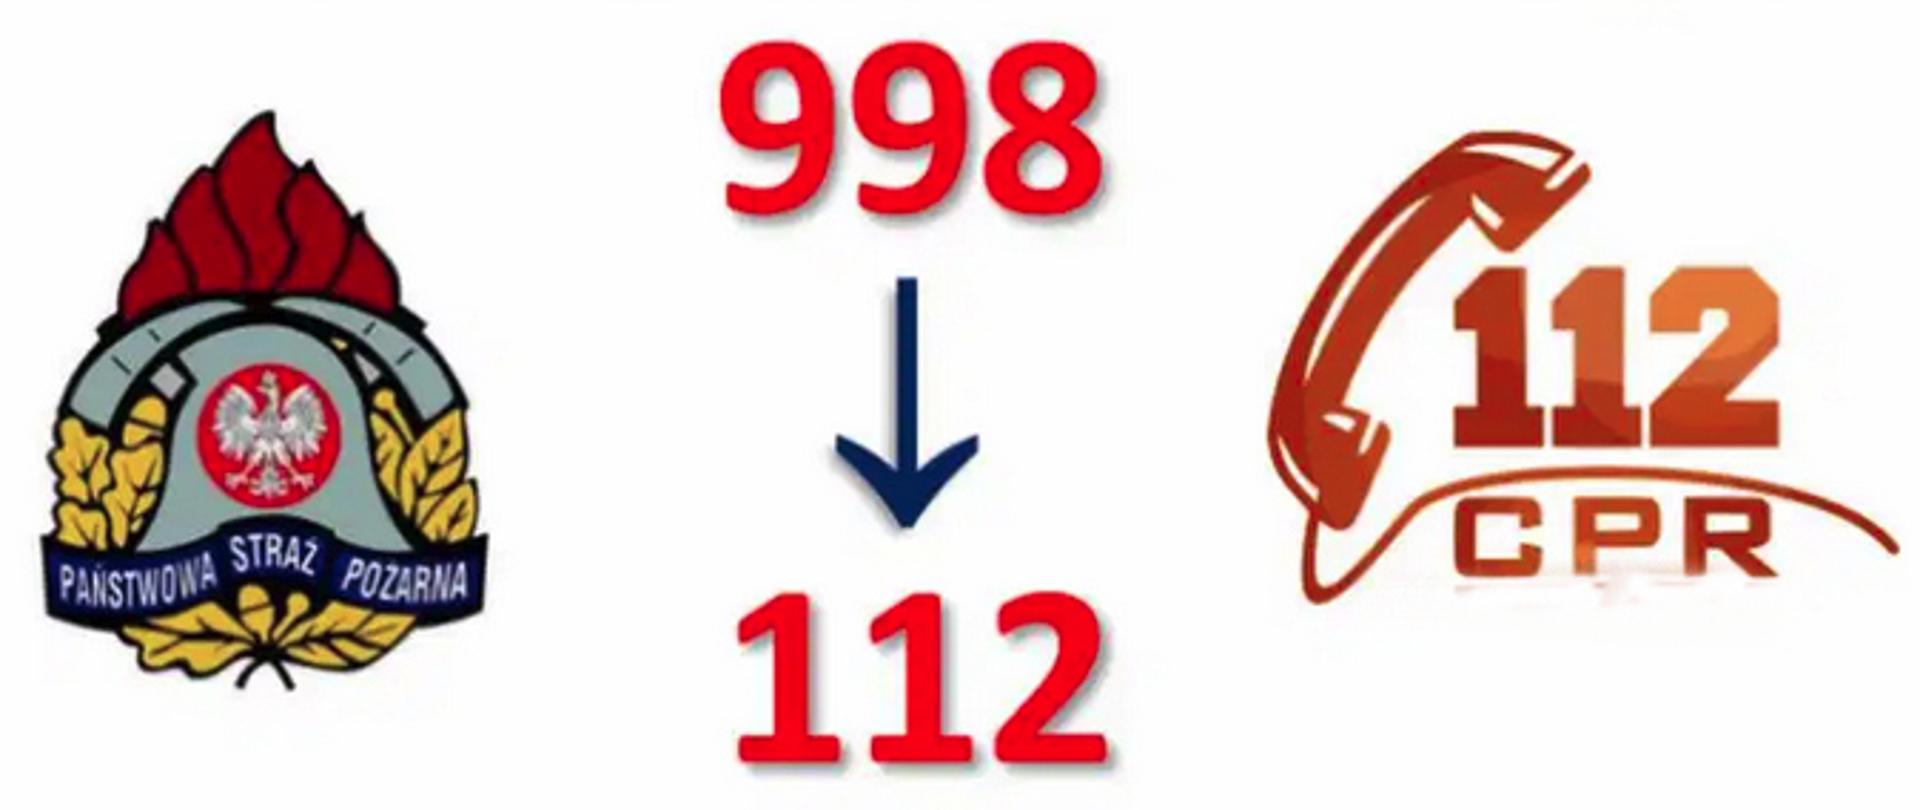 U góry napis: Przełączenie i koncentracja numeru alarmowego. Poniżej na środku numer 998 i strzałka wskazująca na numer 112 znajdujacy się poniżej. Po lewej stronie logo PSP, po prawej logo CPR